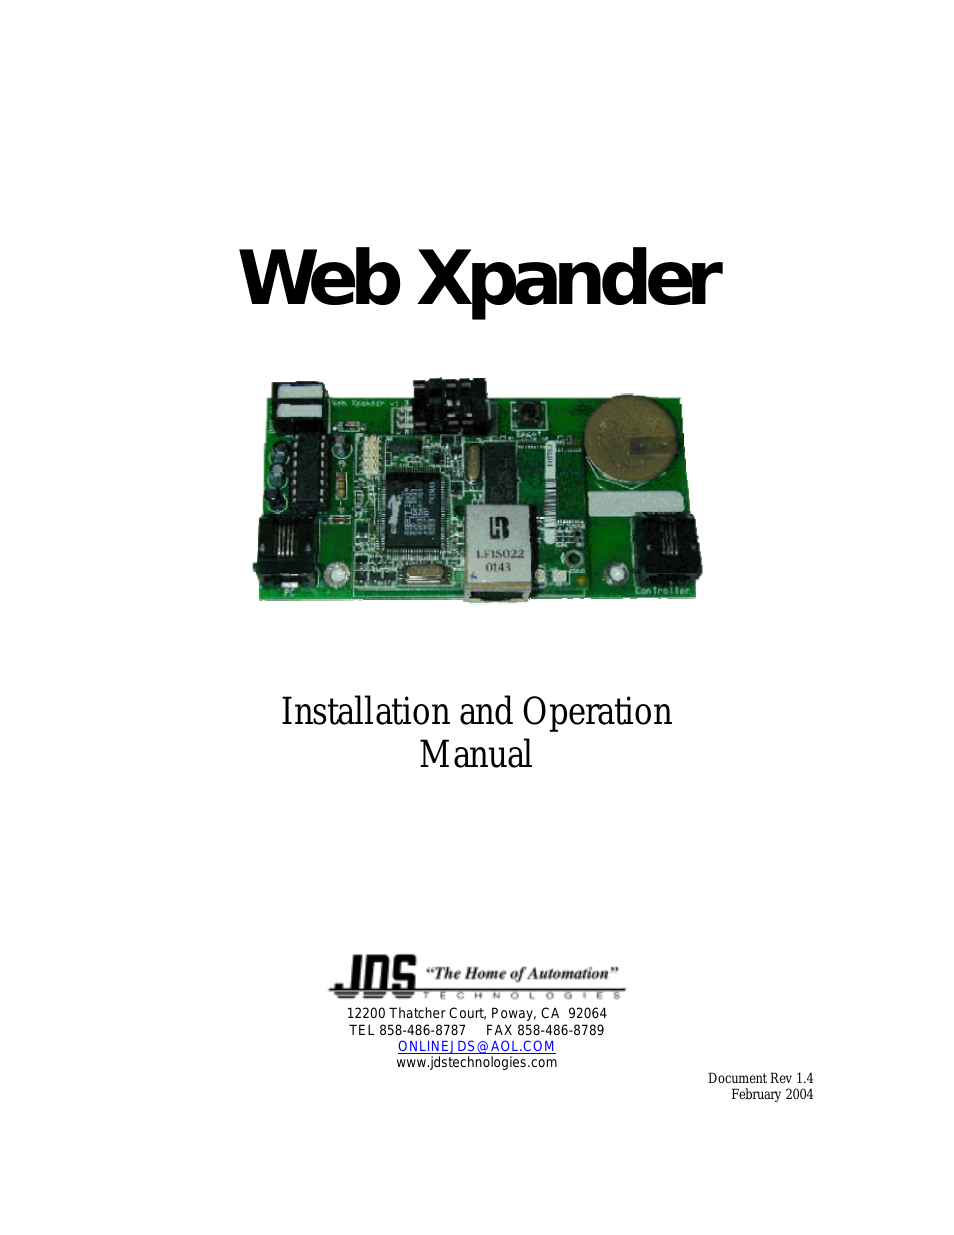 WEB XPANDER RS-232